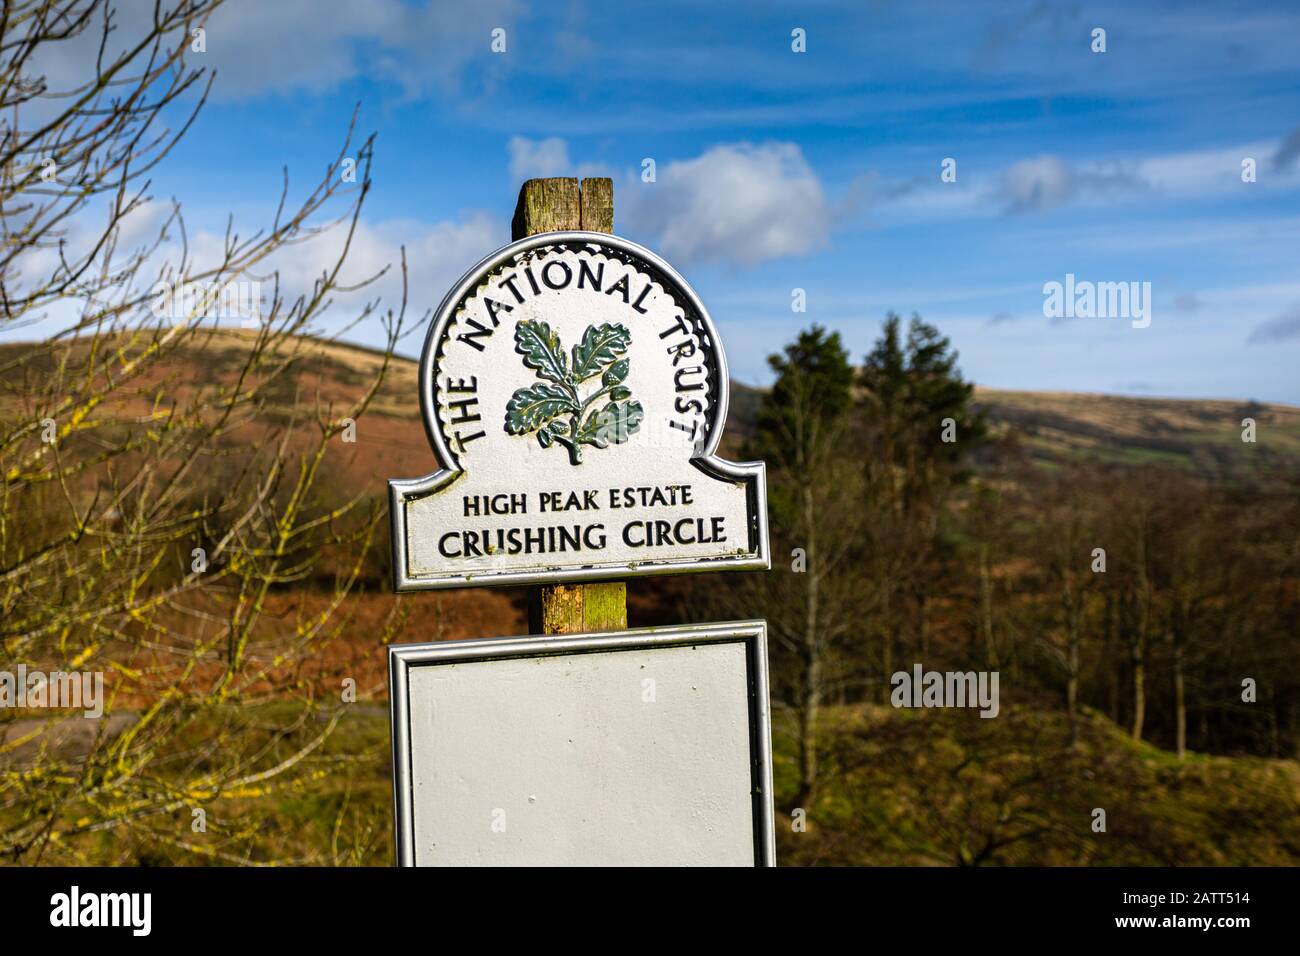 Panneau National Trust pour High Peak Estate, Crushing Circle, The Peak District, Derbyshire, Royaume-Uni Banque D'Images